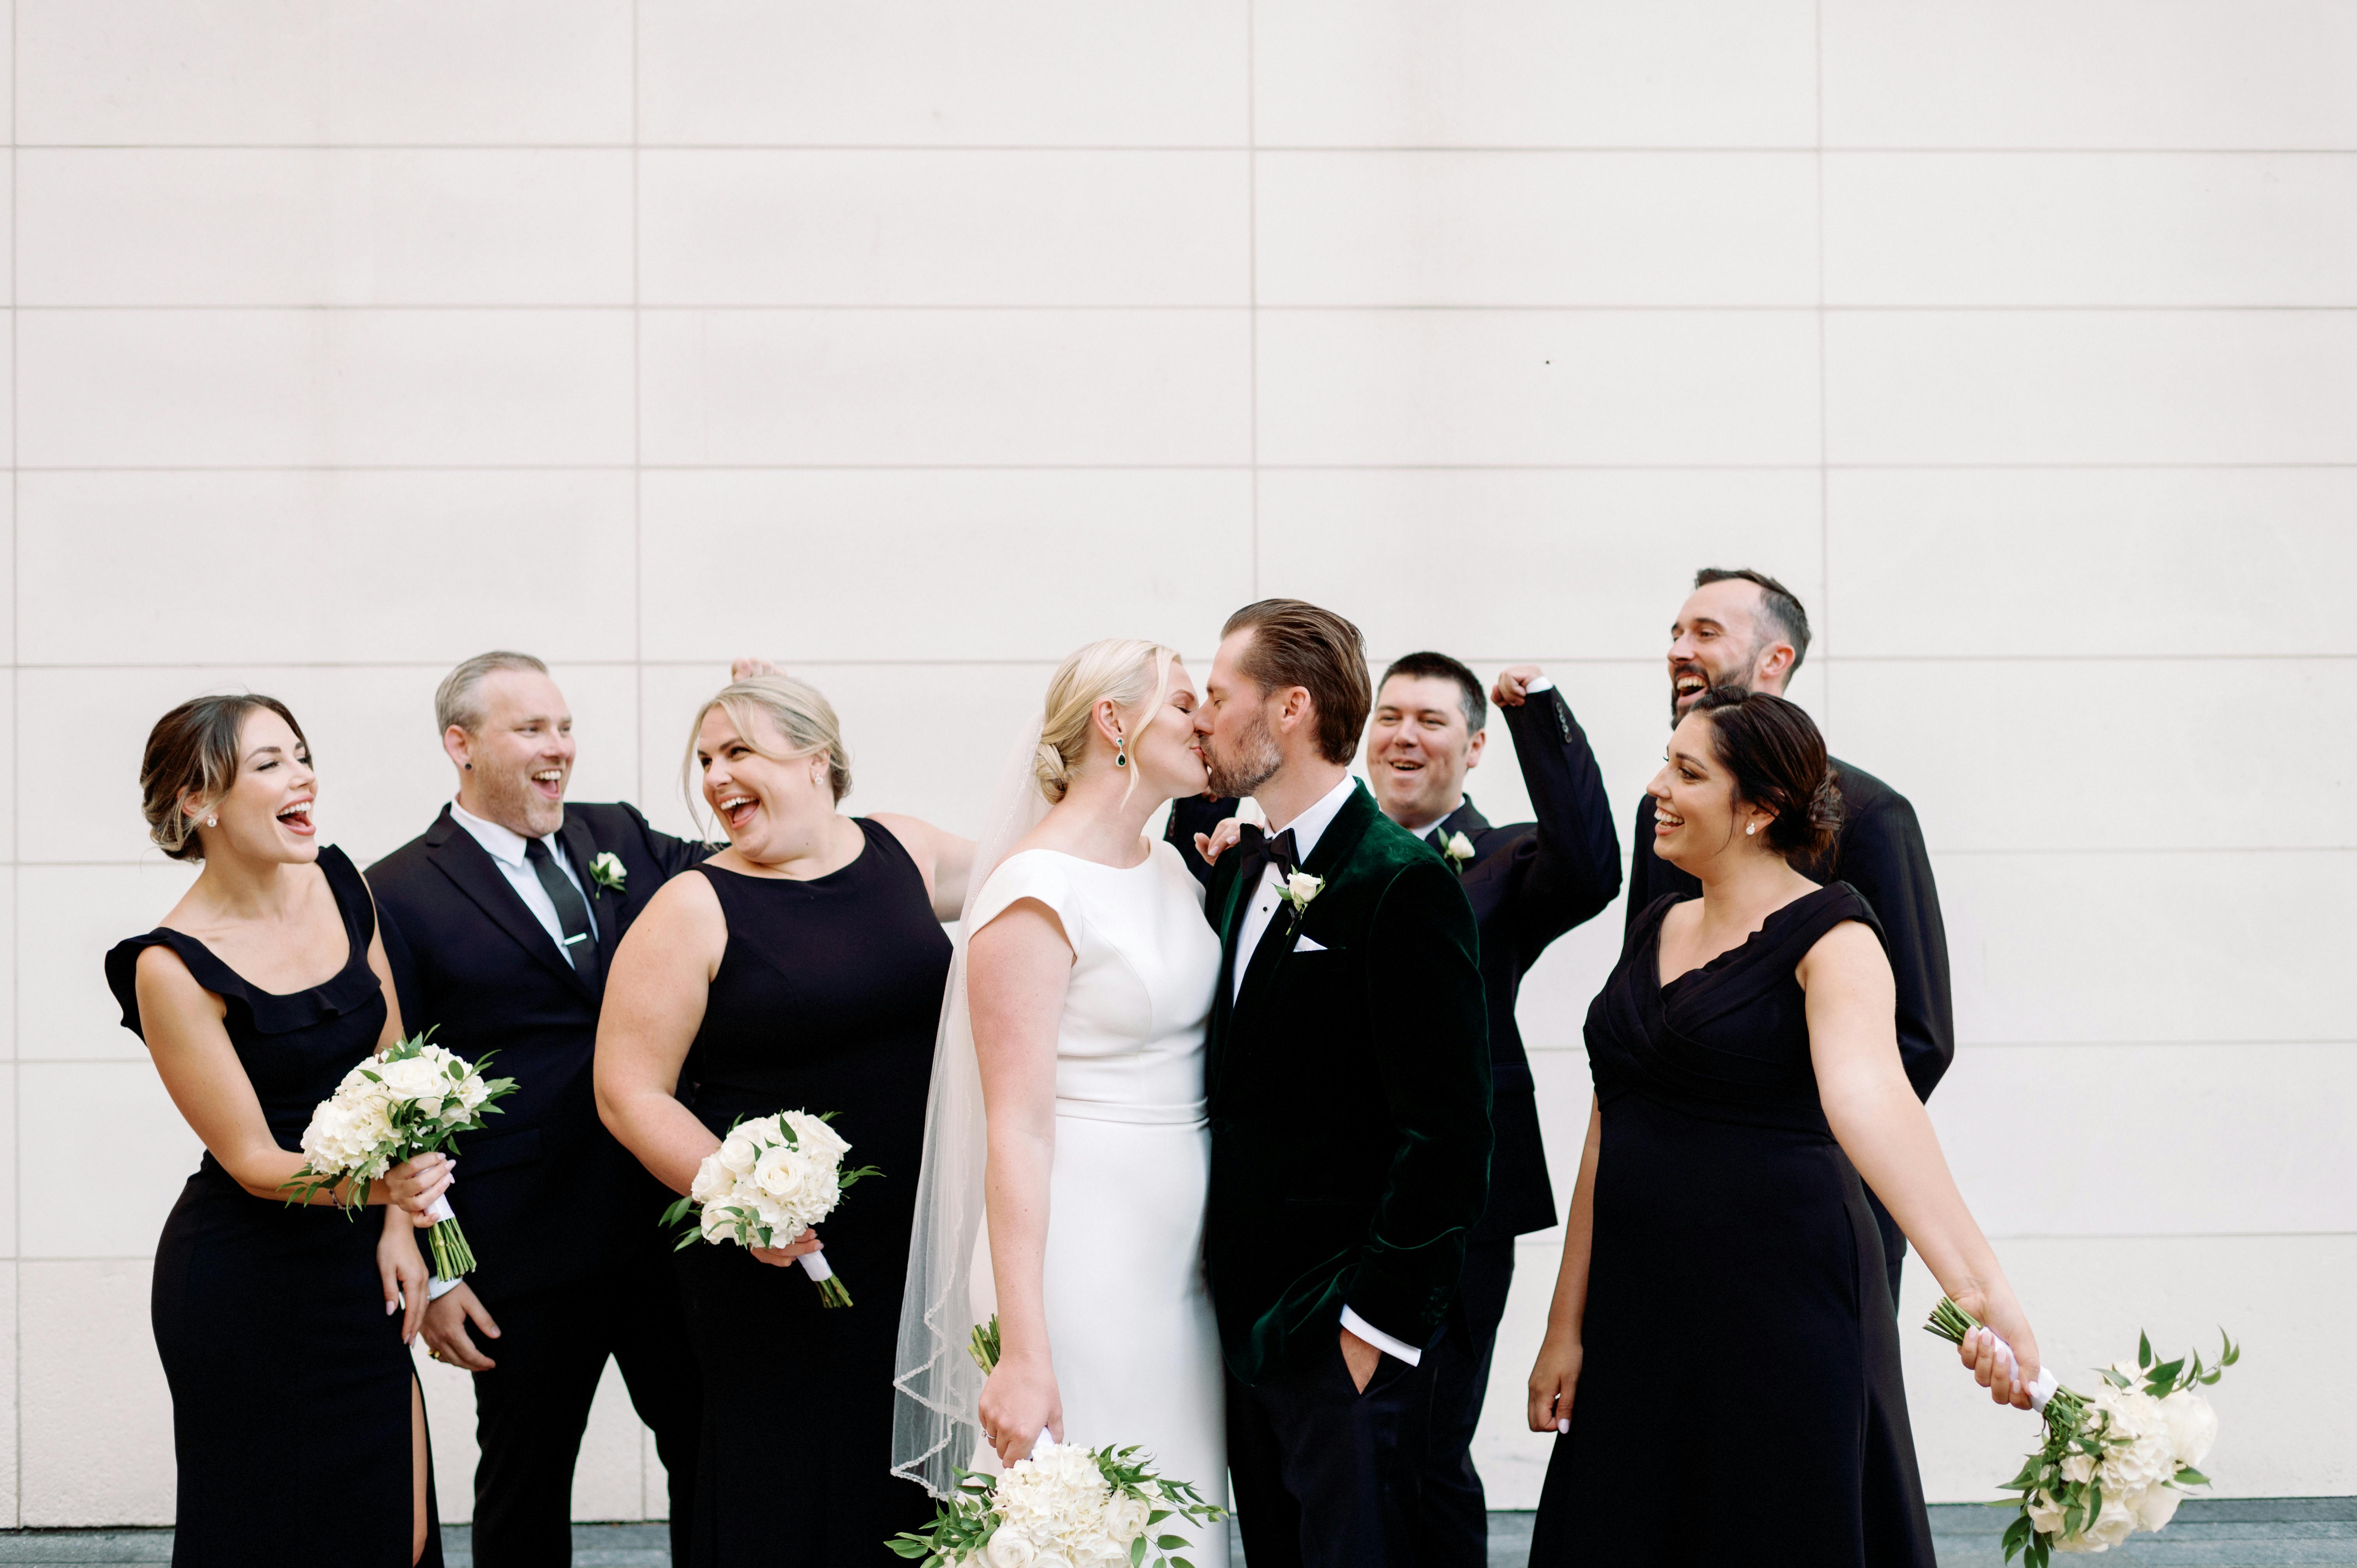 Braut und Bräutigam beim Küssen vor den Gästen | Quelle: Pexels